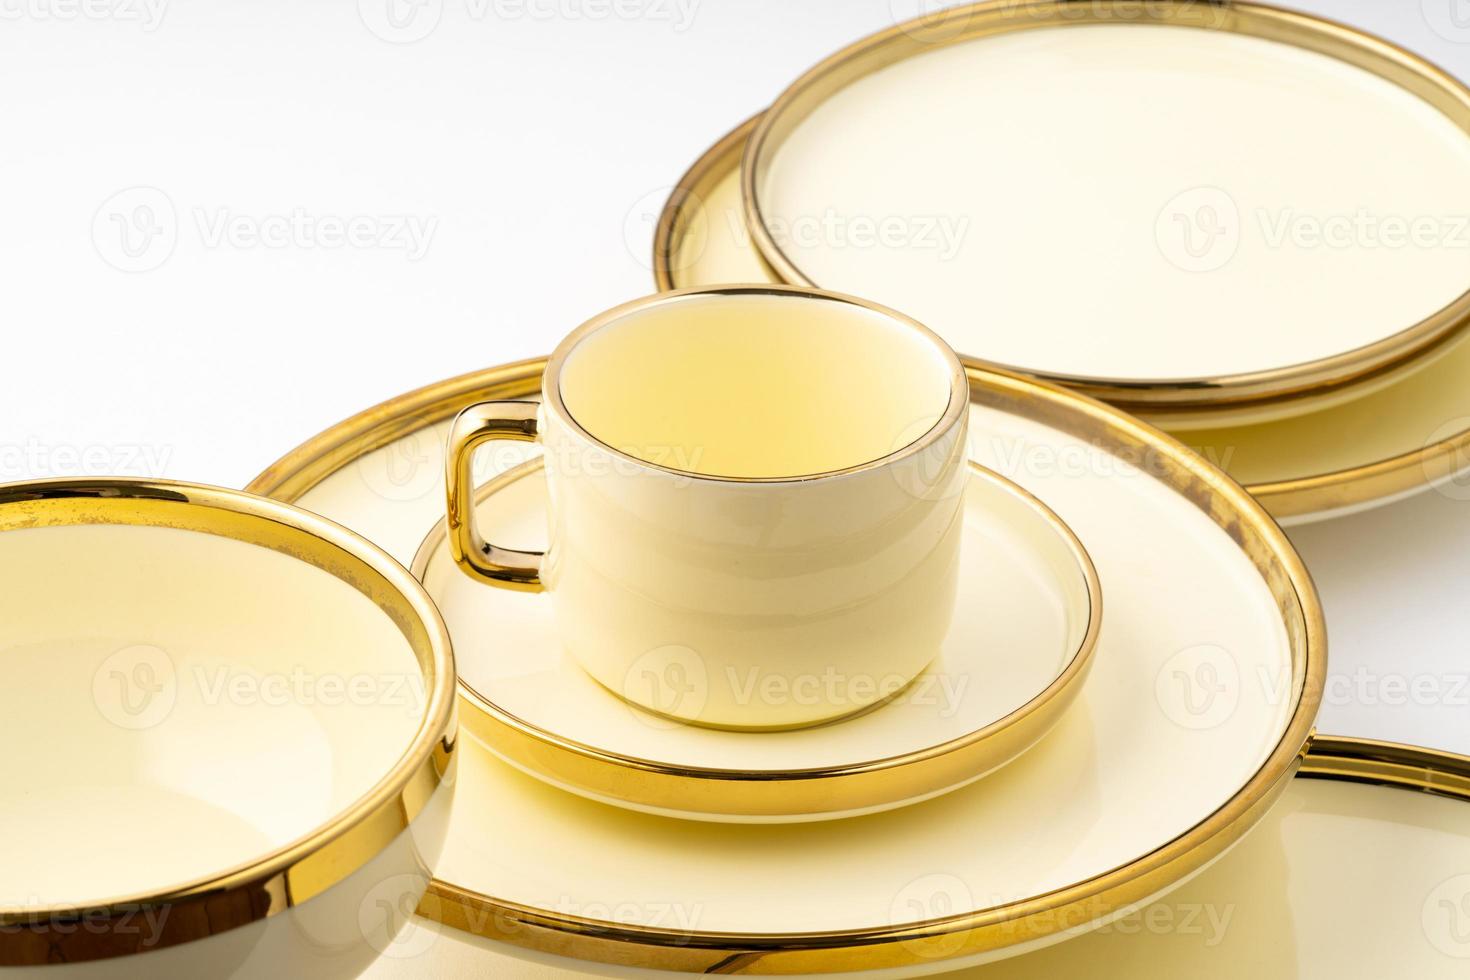 um tiro de close-up de utensílios de cozinha cerâmica de luxo dourado em um fundo branco foto